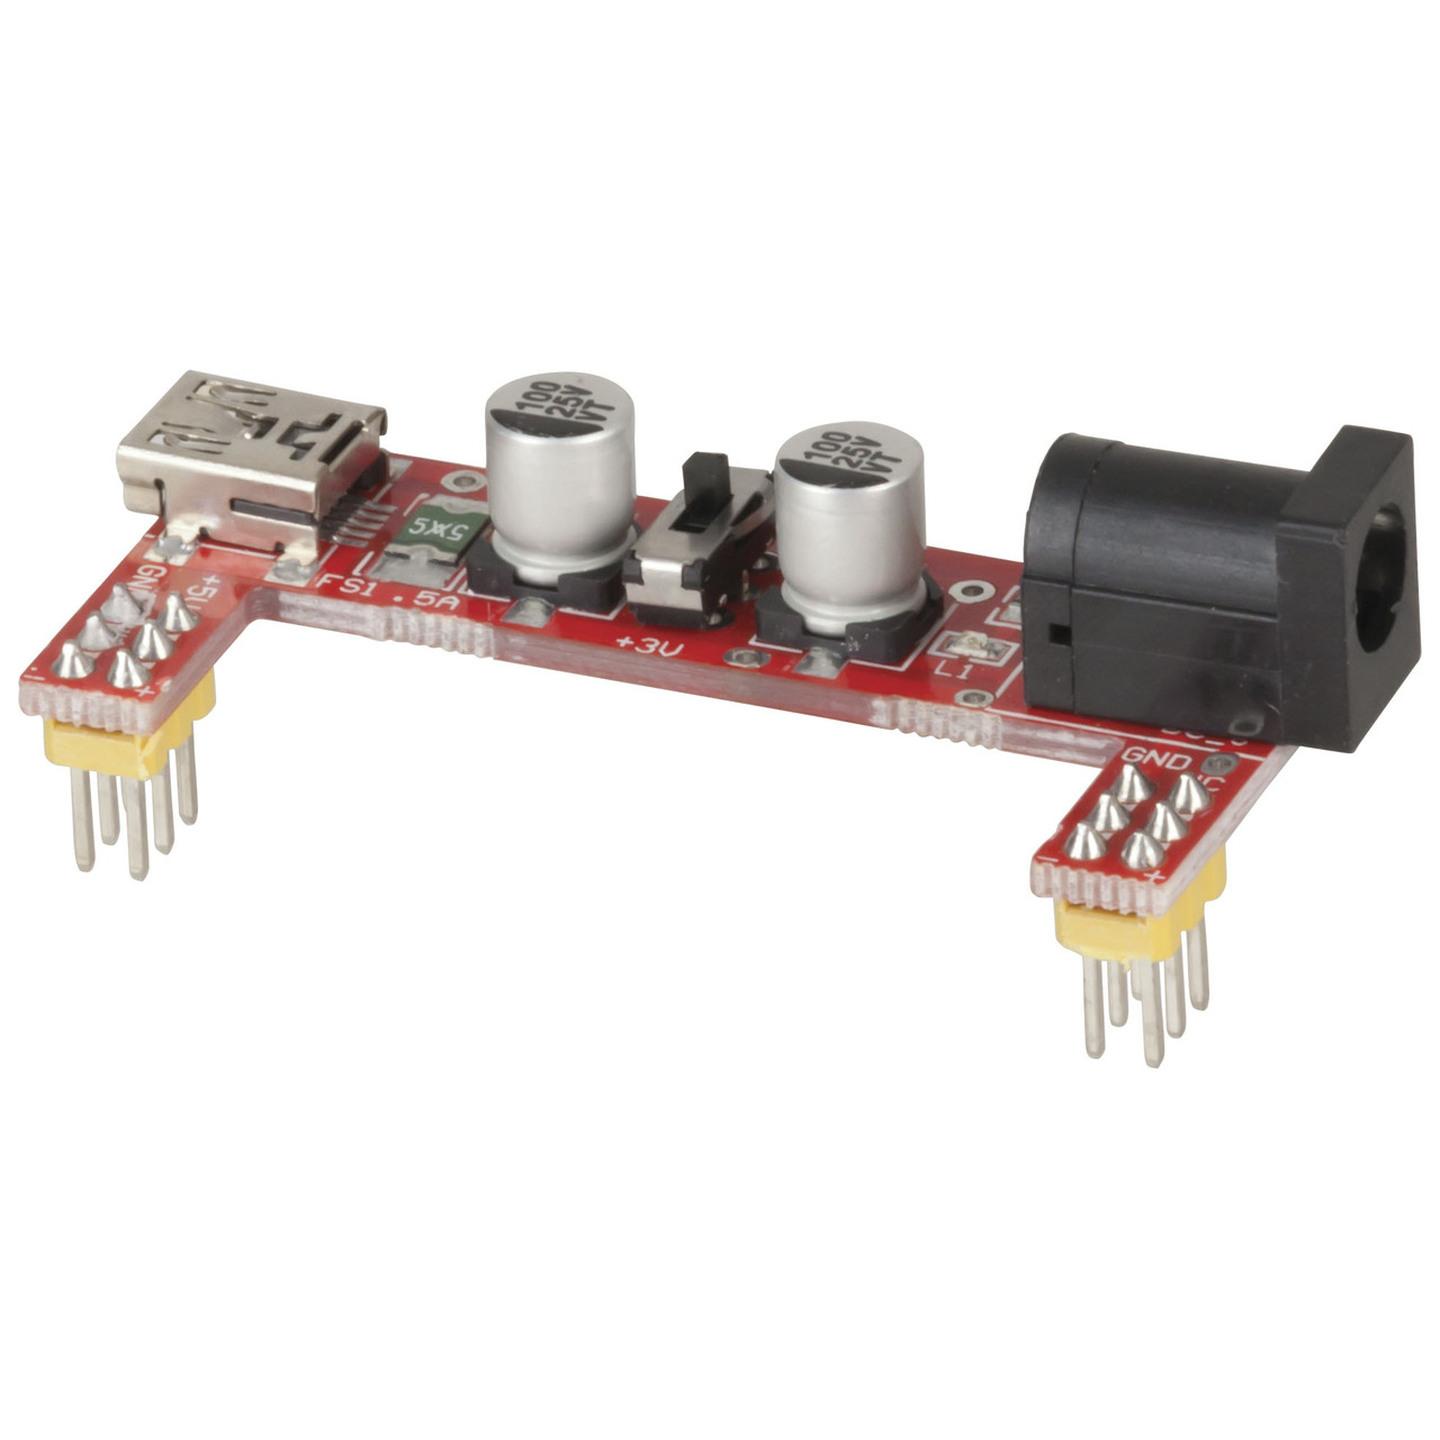 Duinotech Arduino Compatible Breadboard Power Module